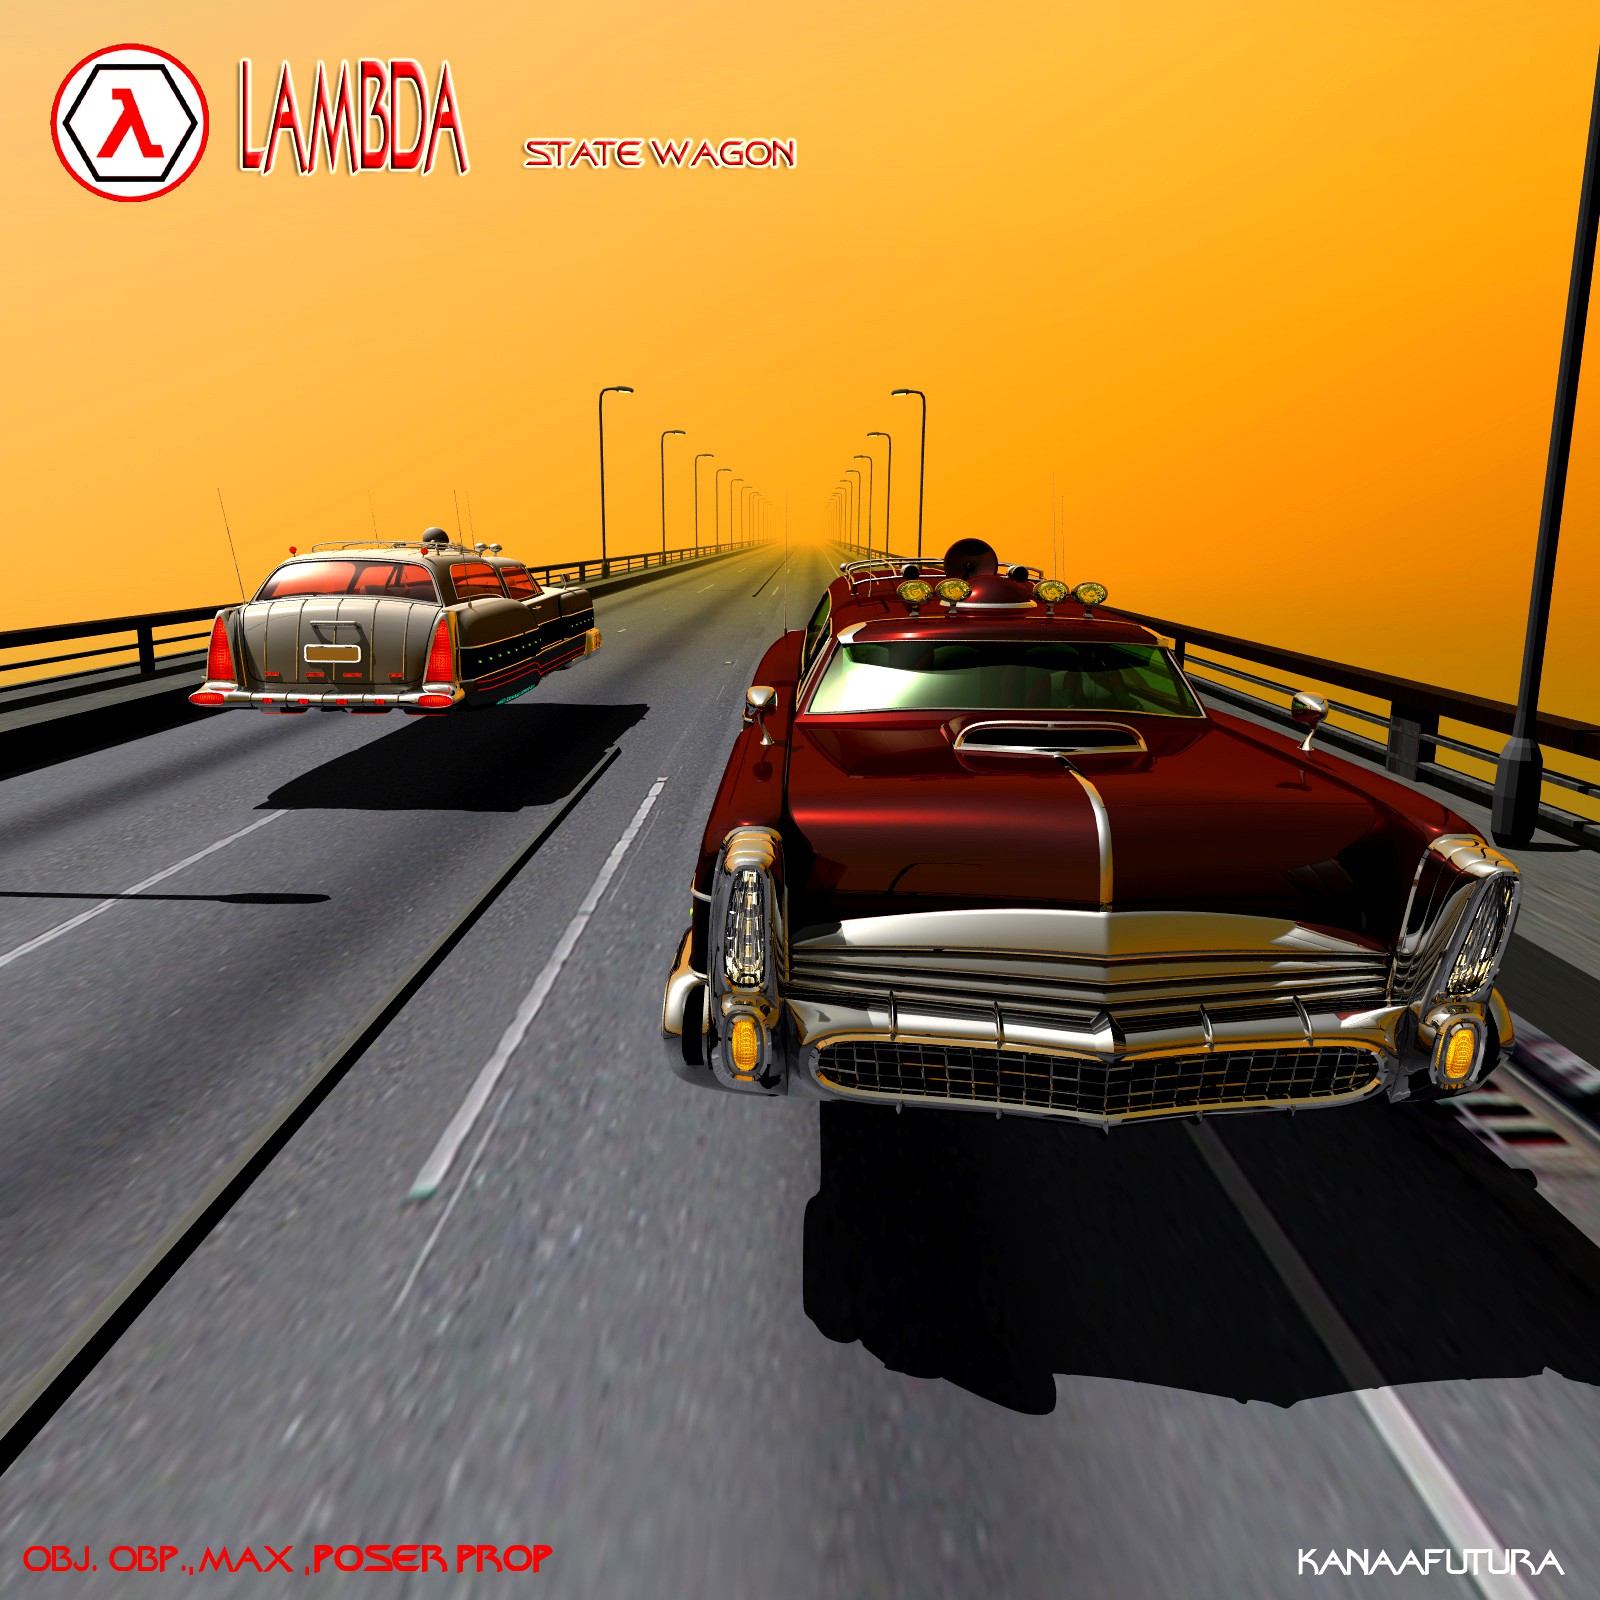 Lambda State Wagon